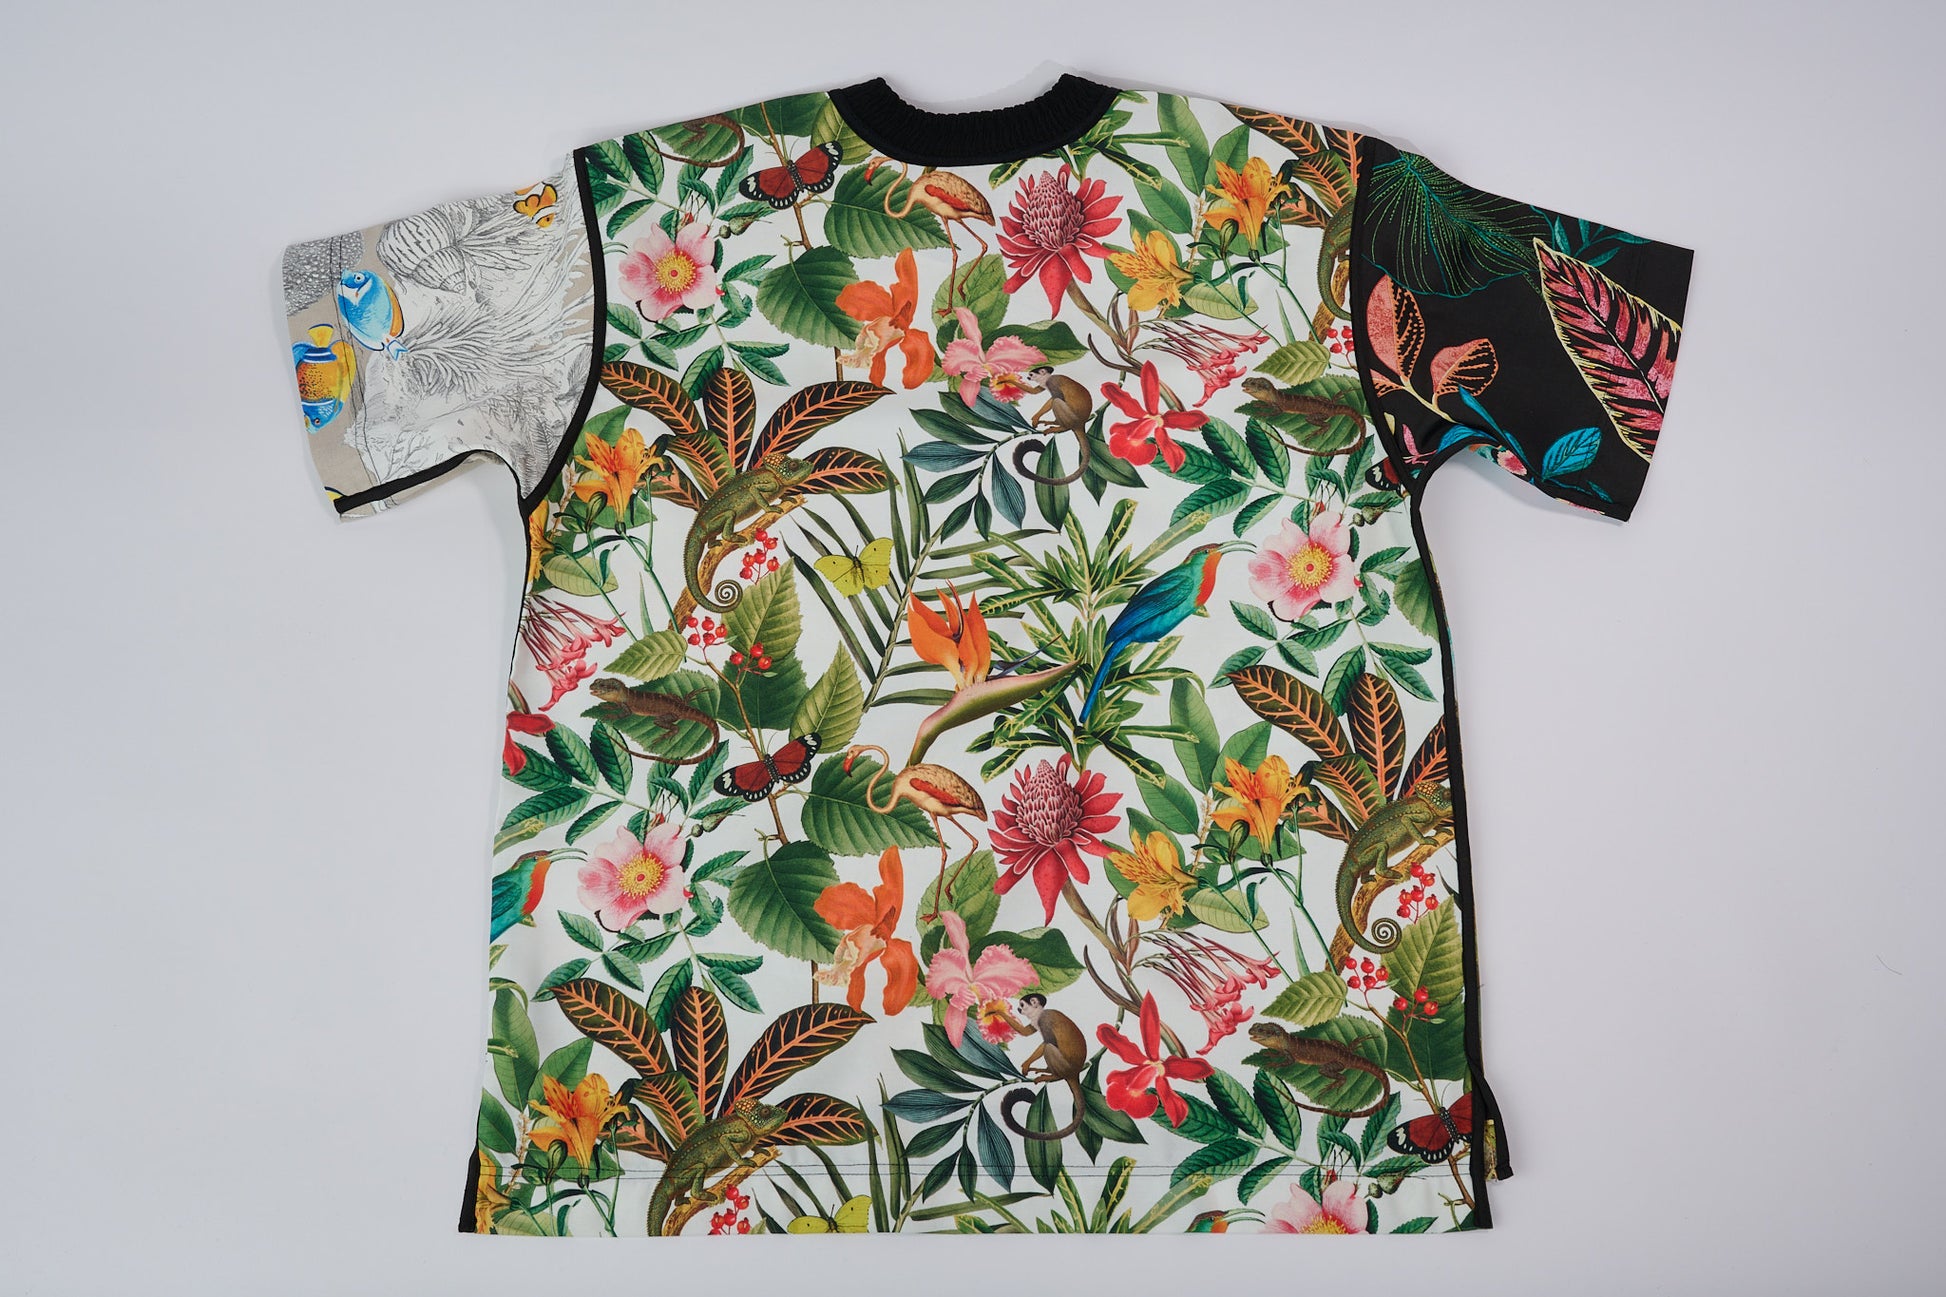 T-shirt BISENGO JP MIKA x XULY-BËT - Numéroté 7/65 - Taille L - Wearable-art inspiré du tableau "La Générosité" de la série de toiles BISENGO de JP MIKA.